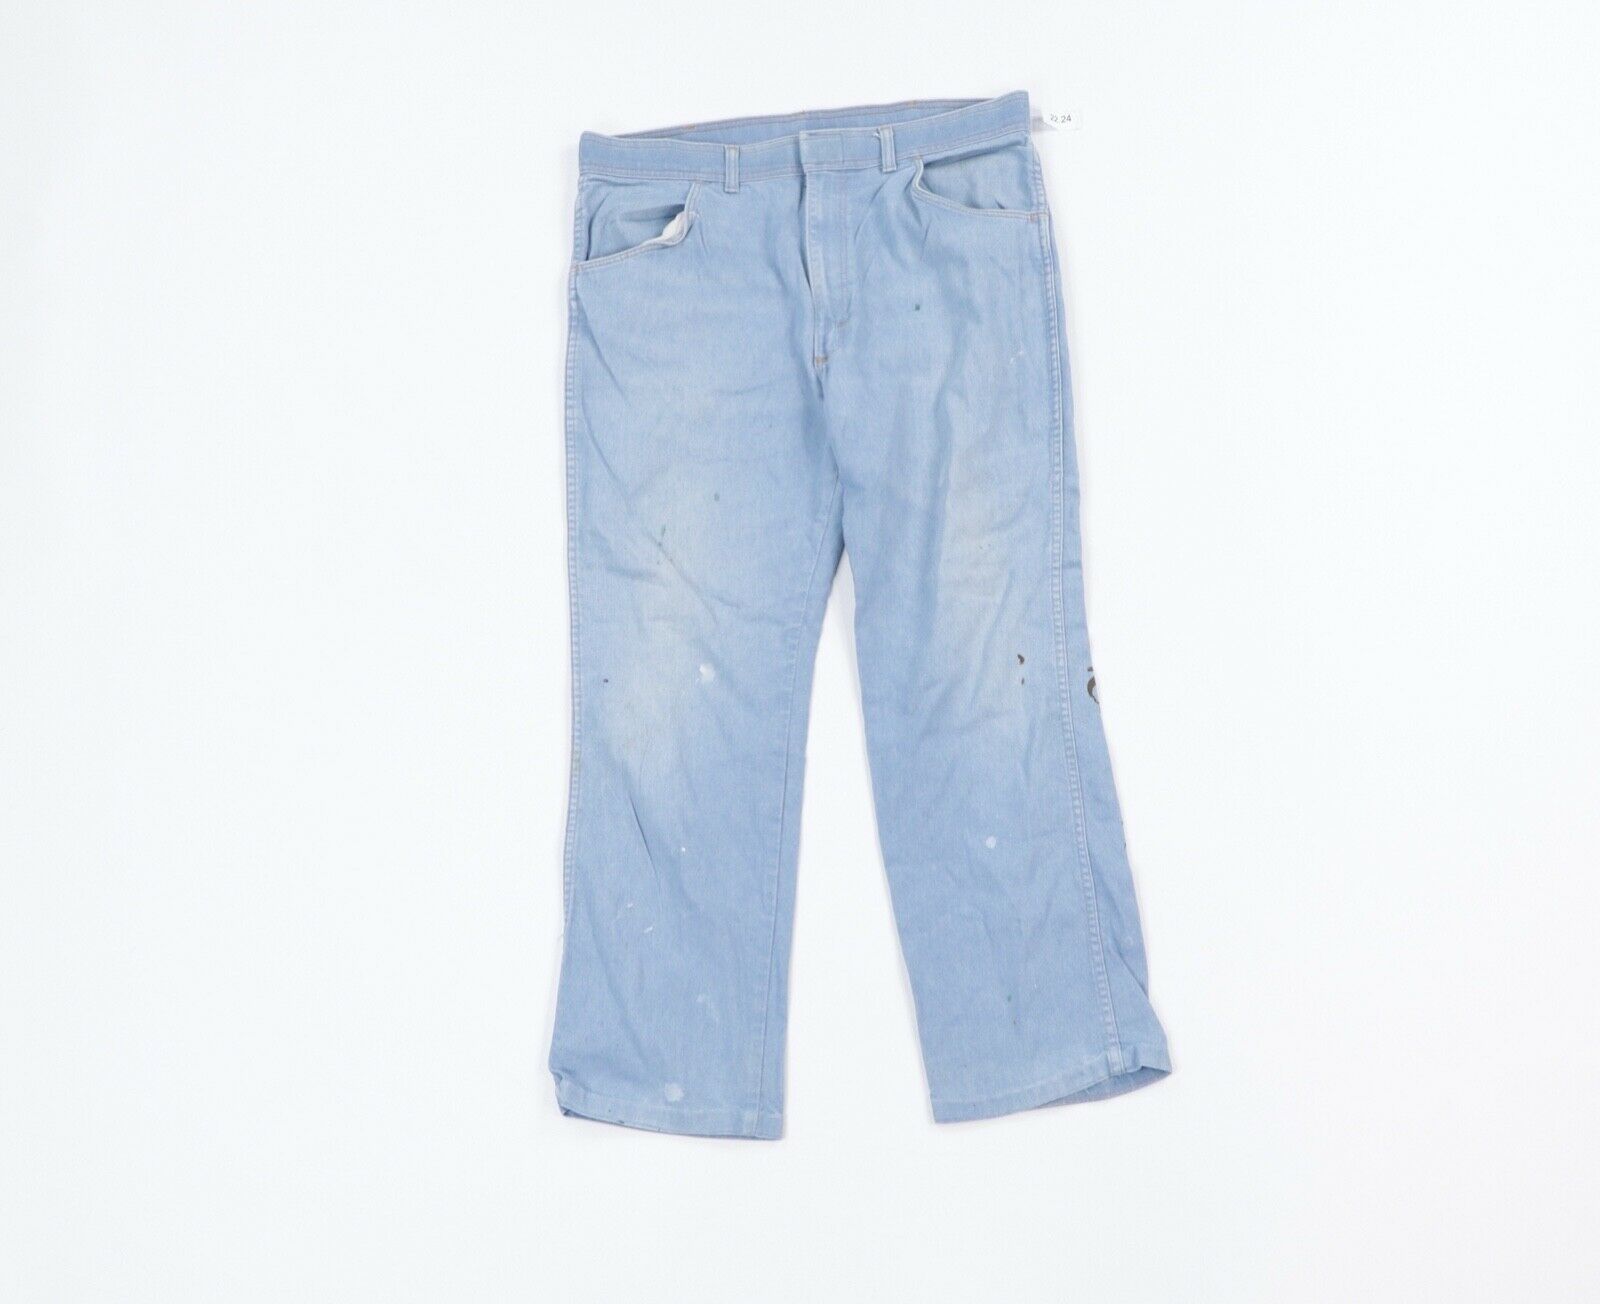 Vintage Vintage 80s Wrangler Thrashed Bootcut Denim Jeans Blue 36 Size US 36 / EU 52 - 1 Preview